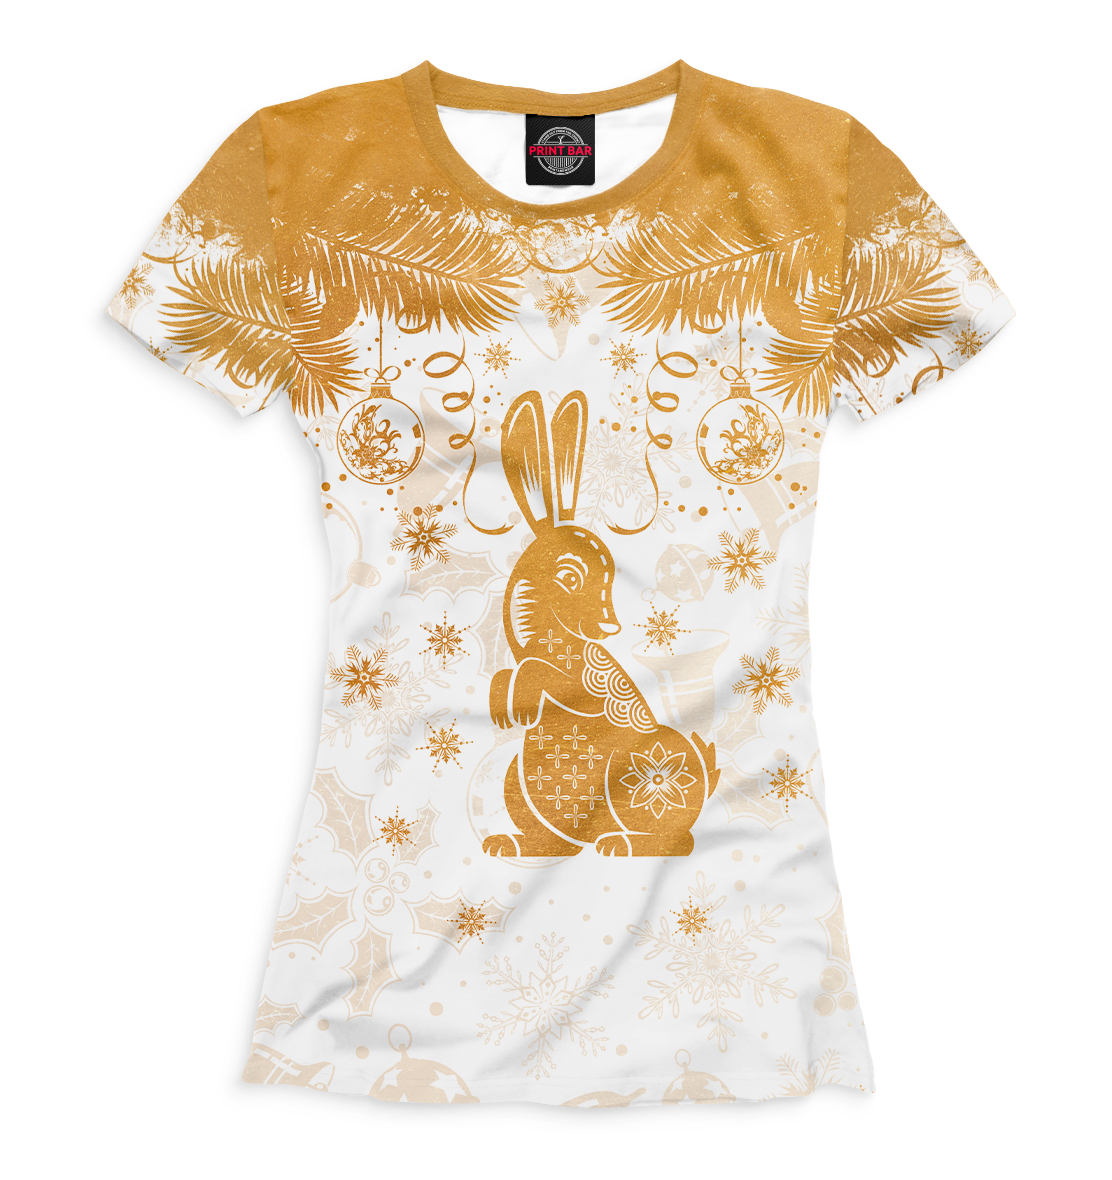 Футболка Золотой кролик для женщин, артикул: YOT-186992-fut-1mp